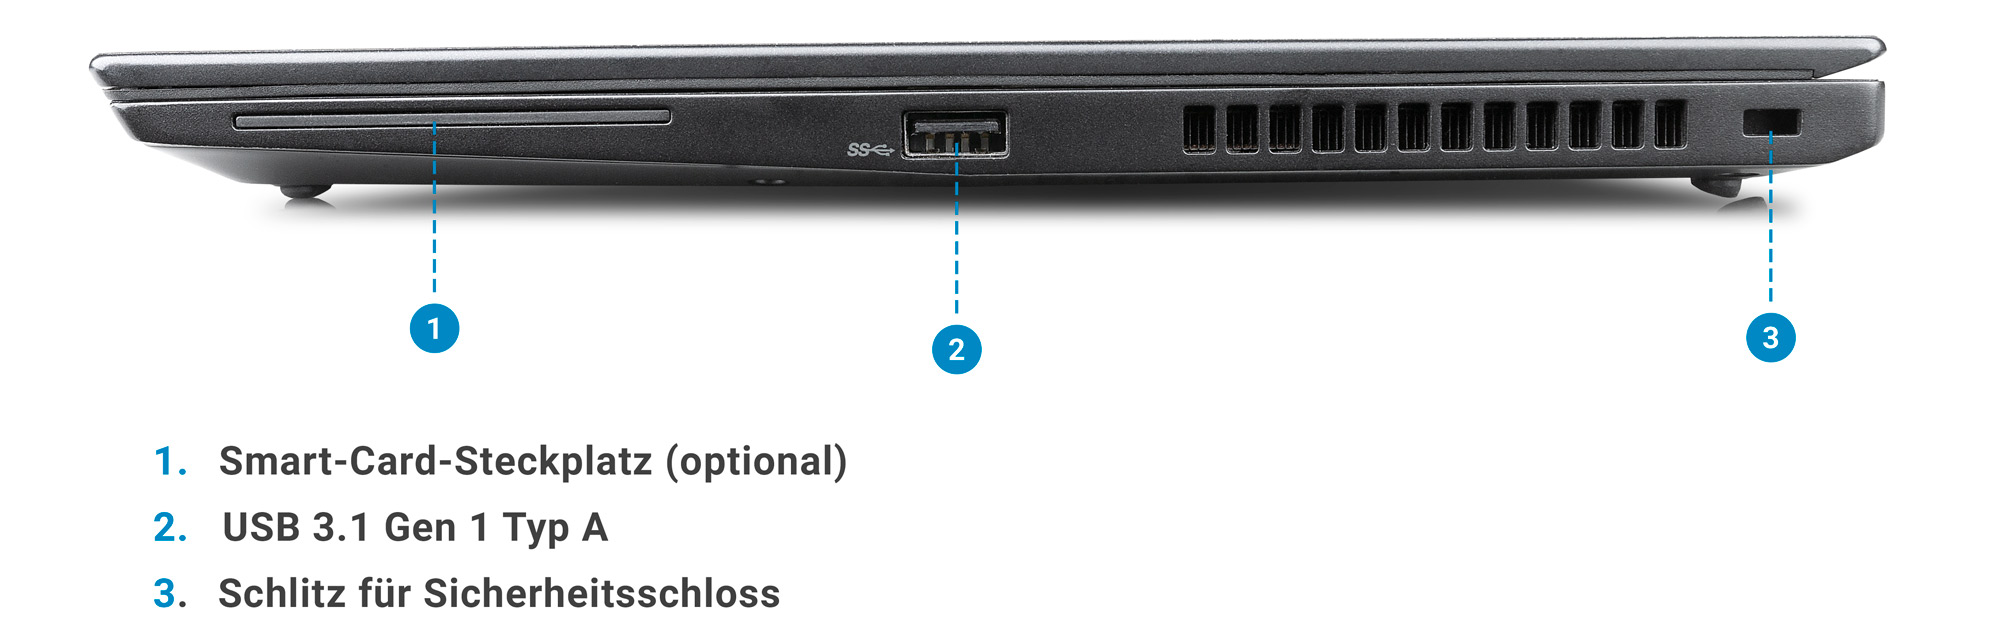 Anschlüsse des ThinkPad T480s rechte Seite